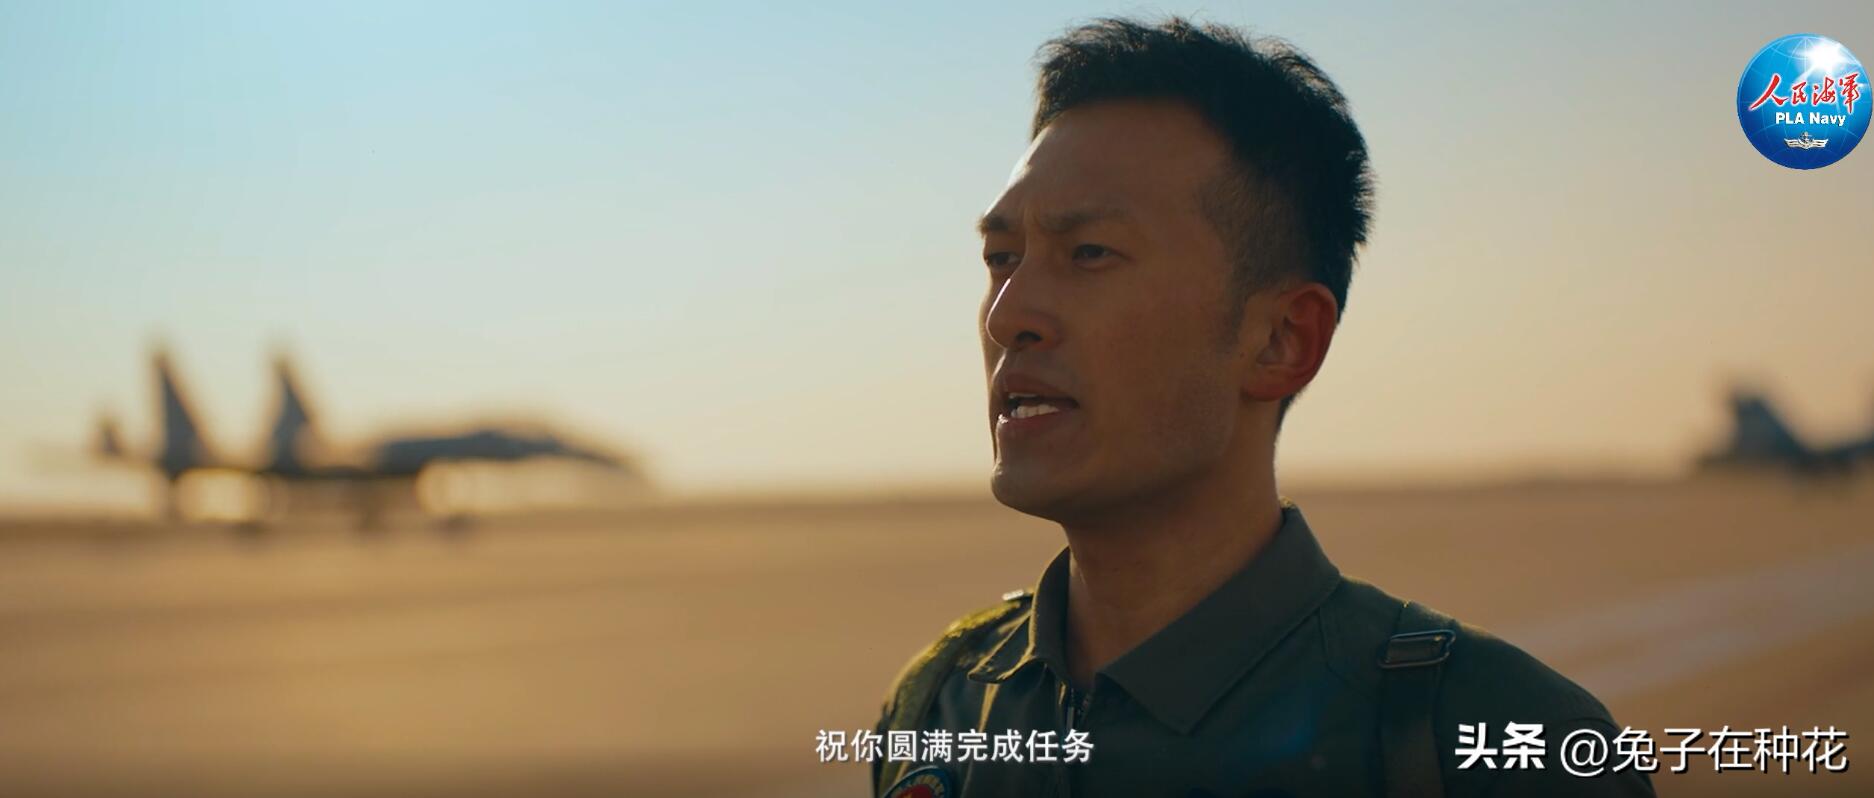 中国海军招飞宣传片埋“彩蛋”,究竟是怎么一回事?